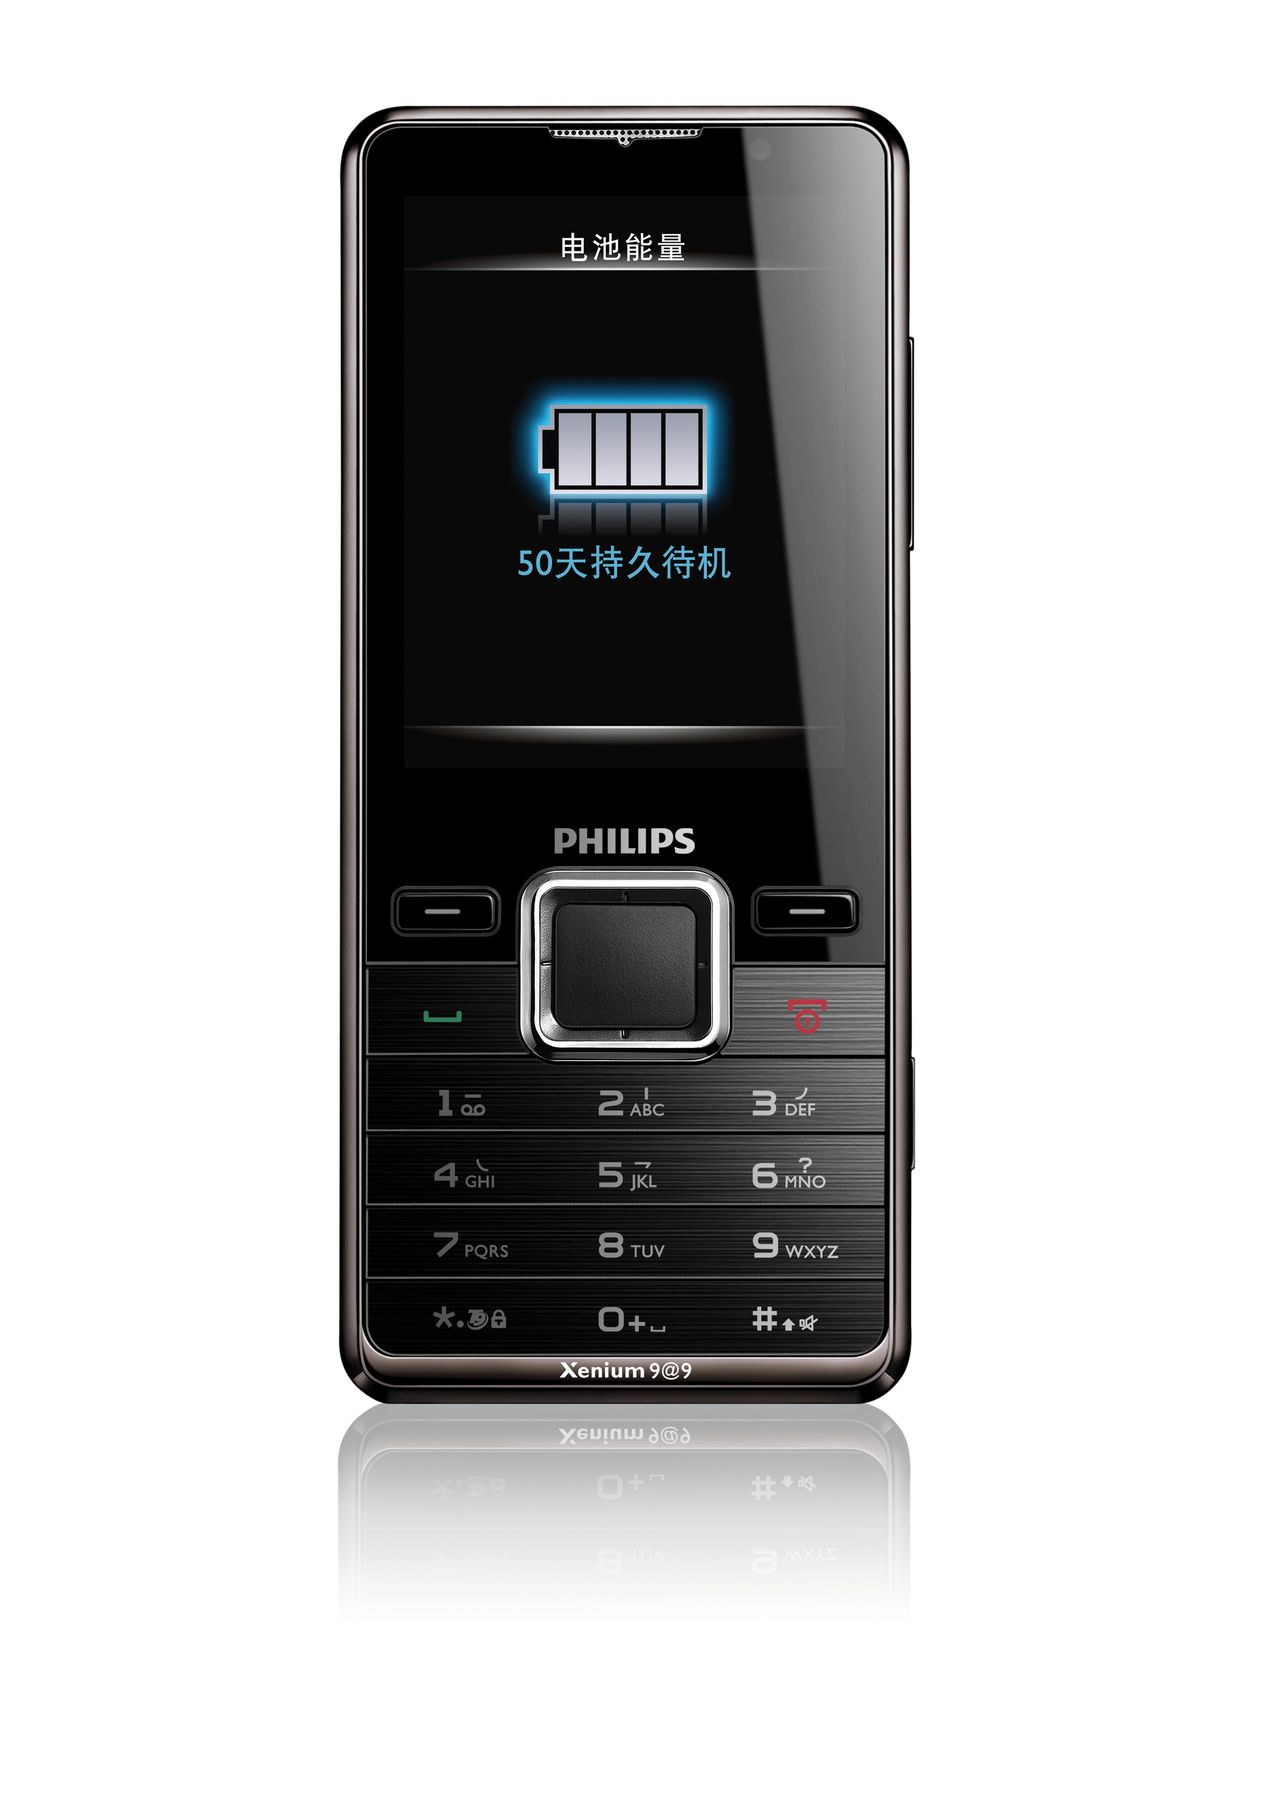 Филипс телефоны 2 сим. Мобильный телефон Филипс ксениум кнопочный. Philips Xenium e570. Филипс ксениум кнопочный с двумя сим. Филипс телефон кнопочный с мощным аккумулятором.